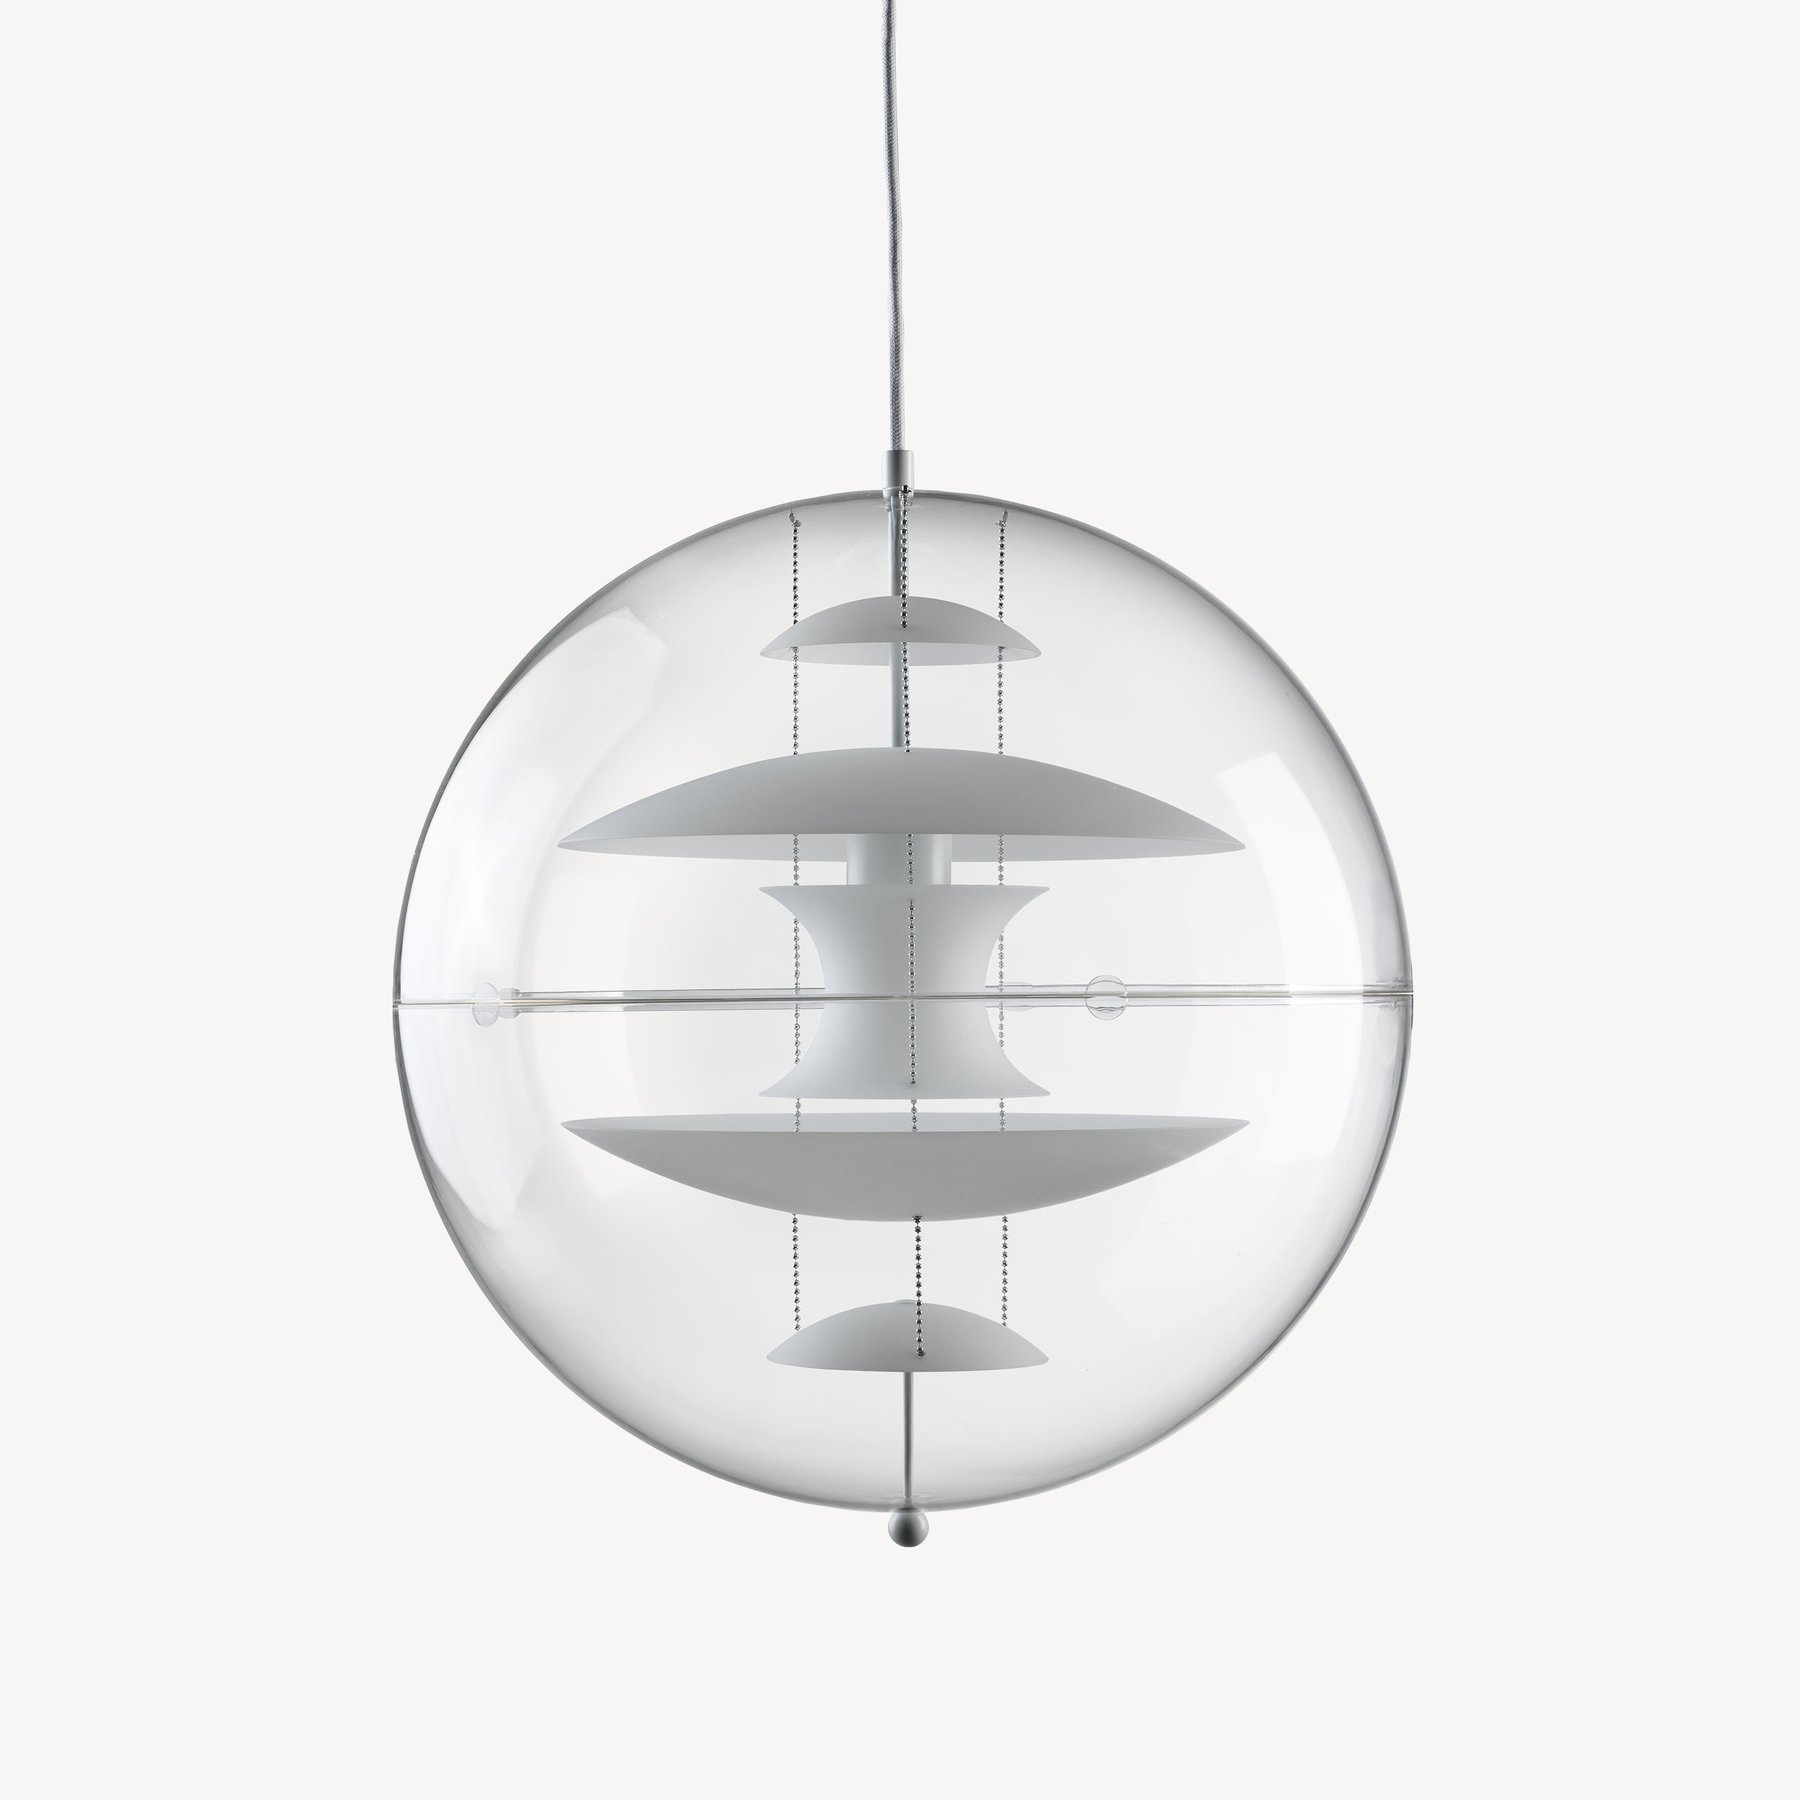 丹麦家具Verpan的VP Globe Glass 吊灯 主图